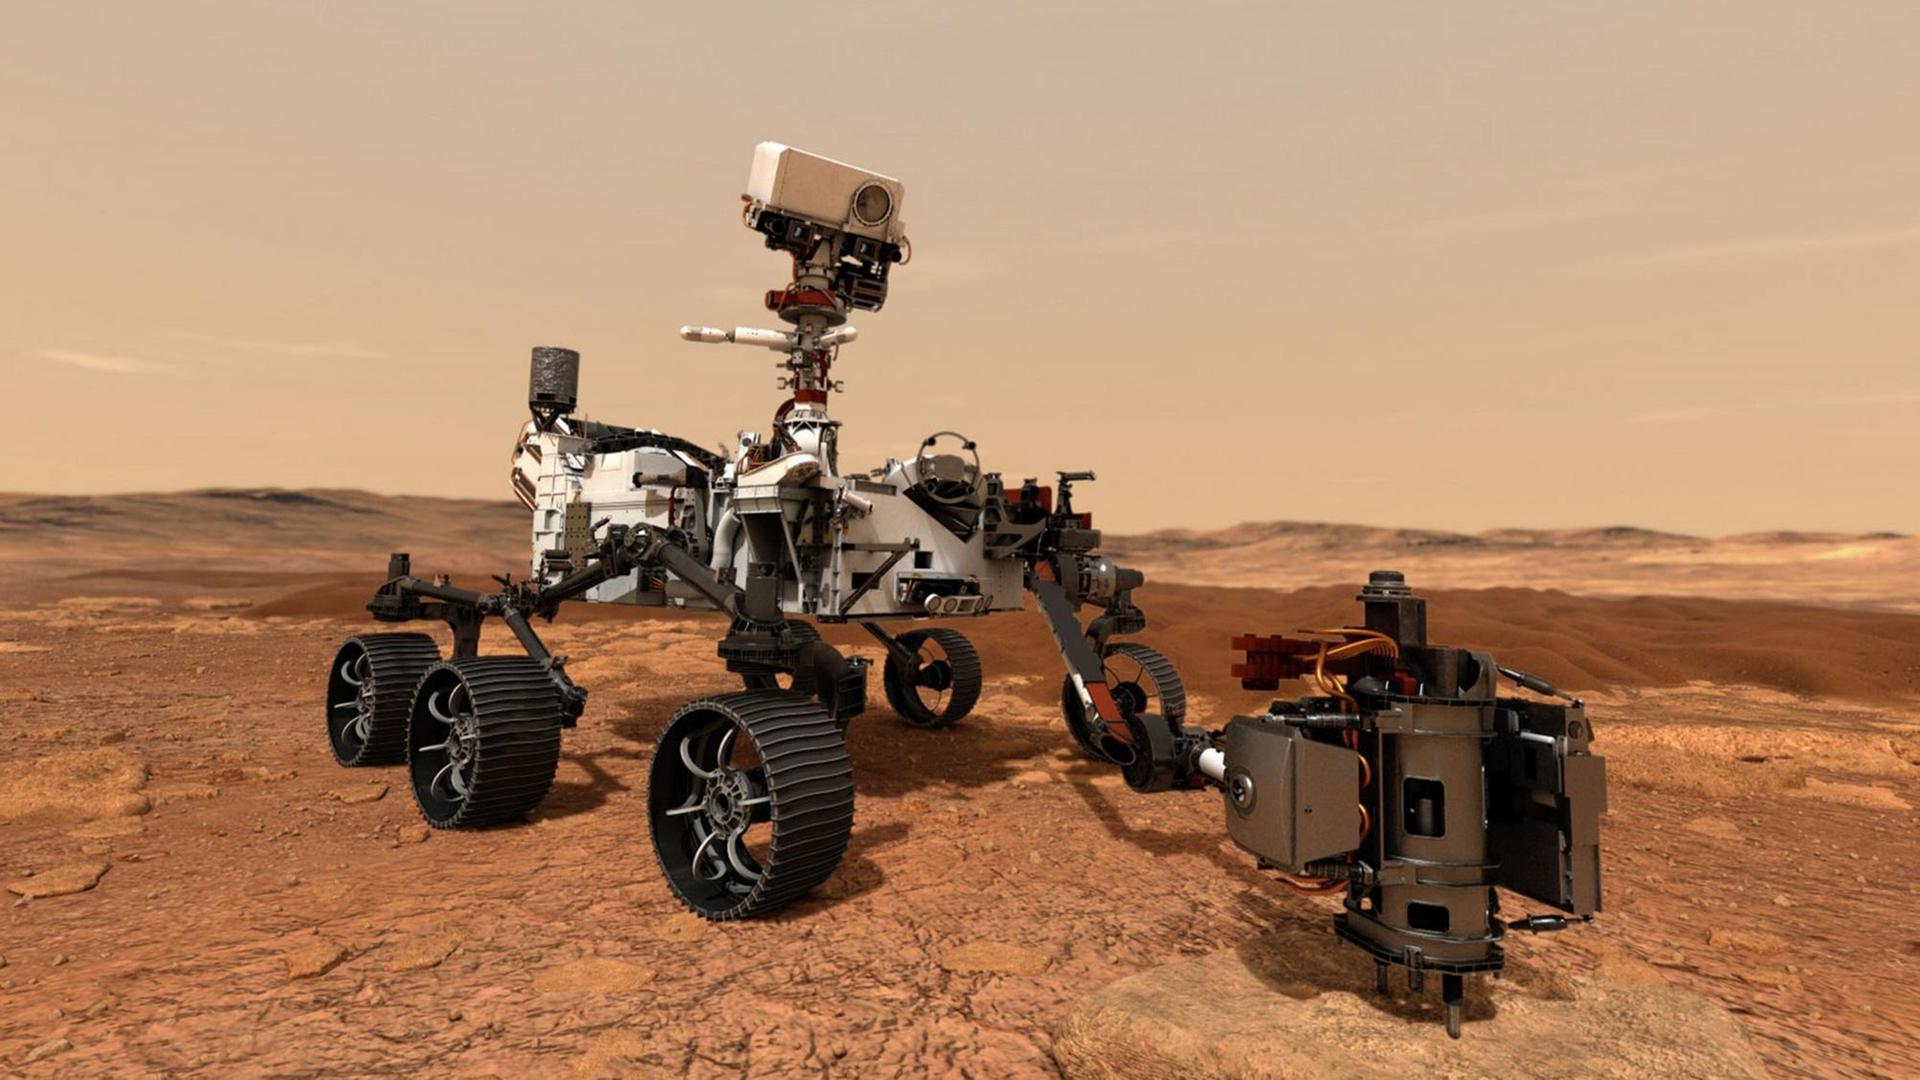 Der Mars-Rover "Perseverance" steht auf dem roten Gestein auf dem Planeten Mars. Er sieht aus wie eine Art Gelände-Wagen mit sechs Rädern.